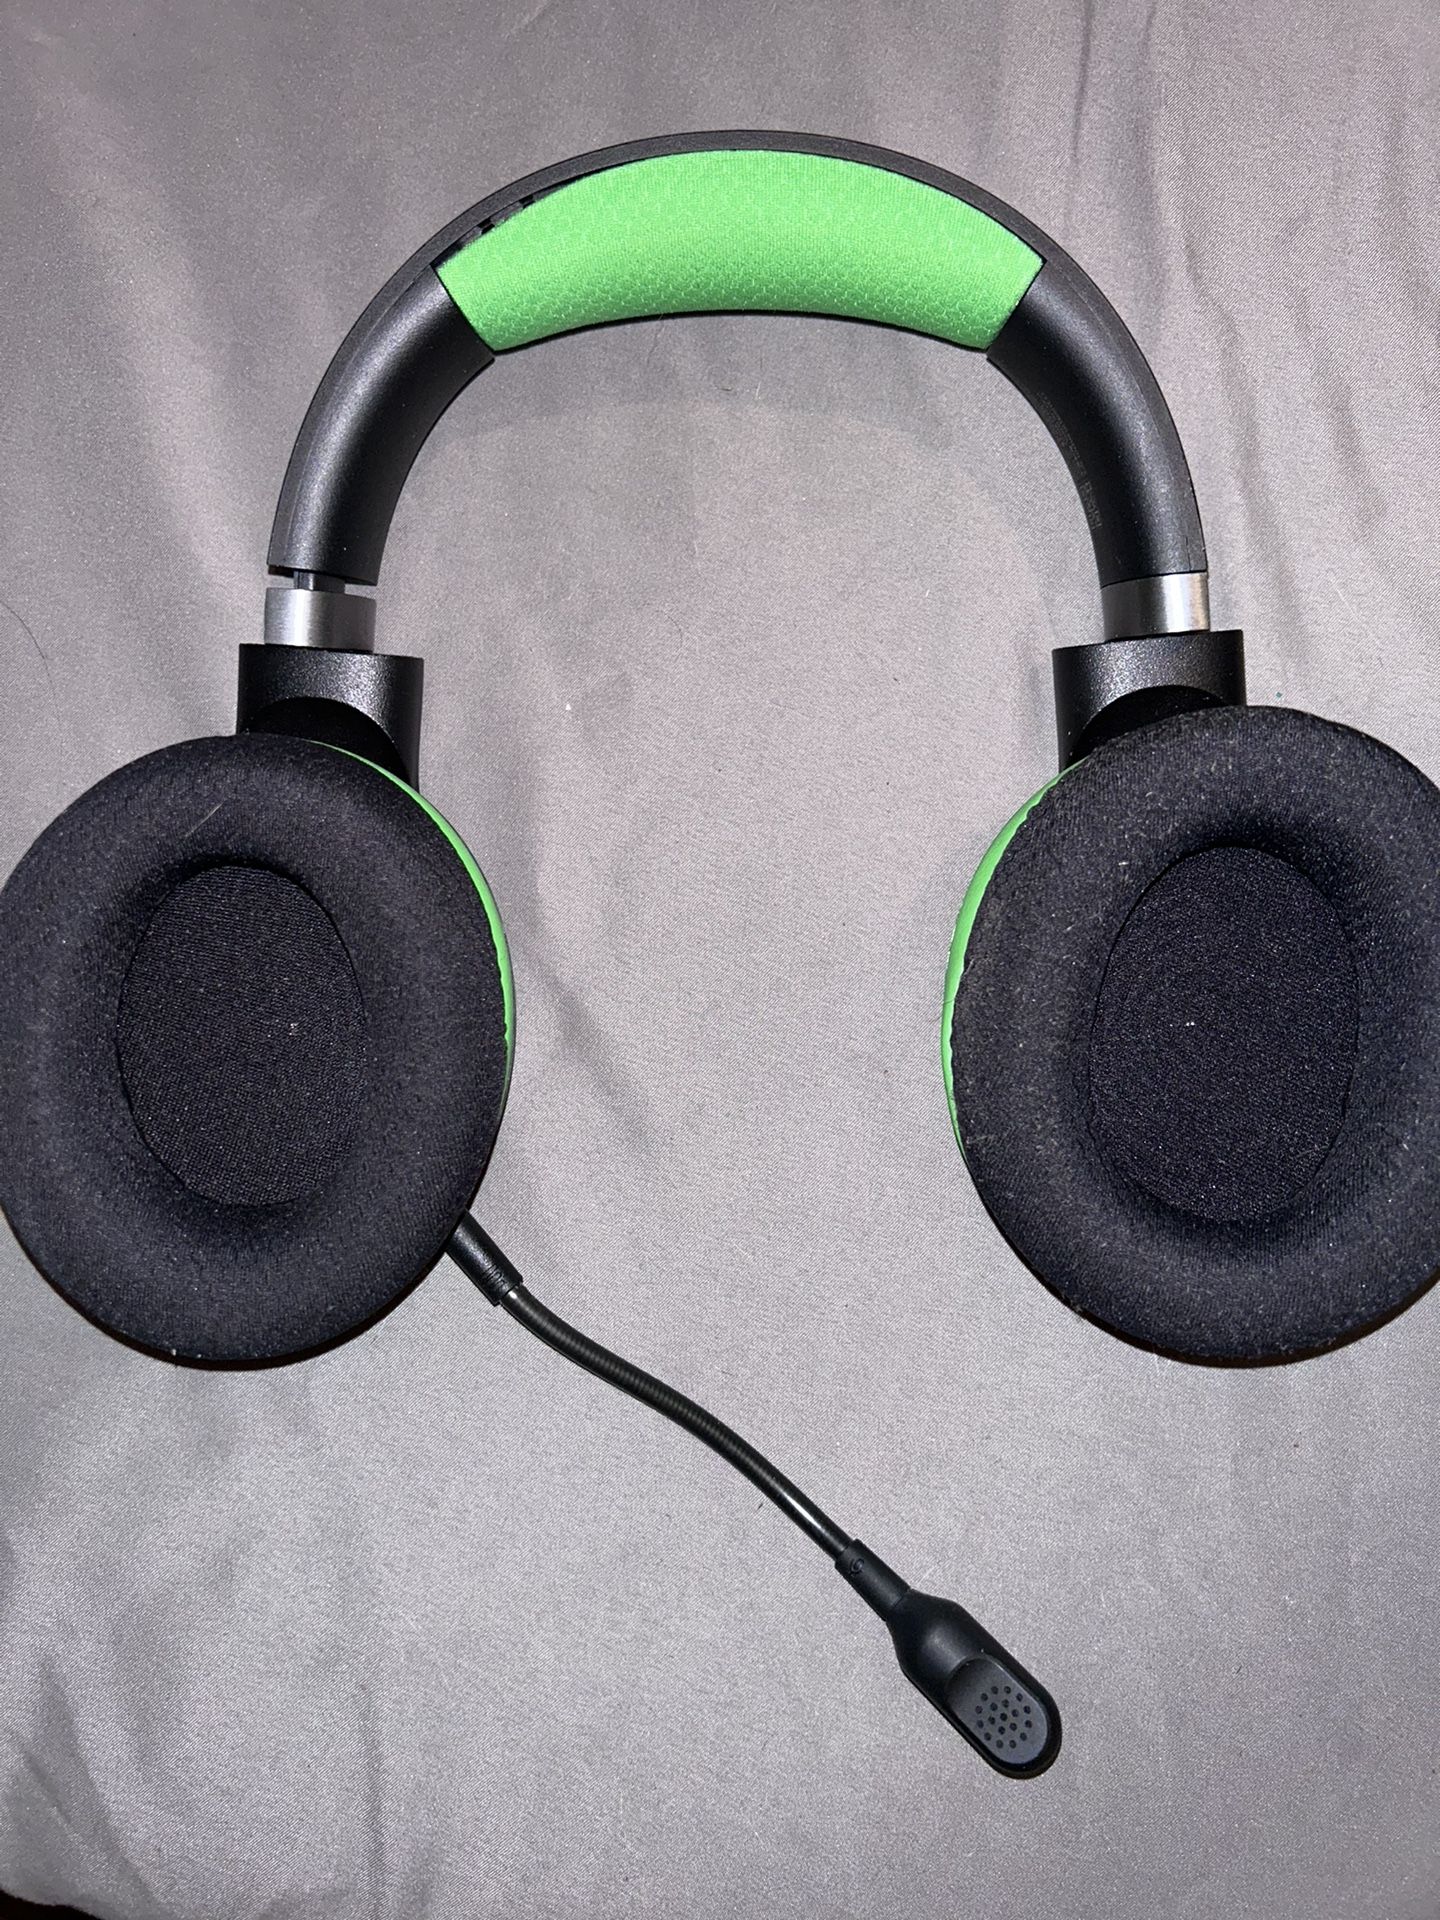 Razer headphones